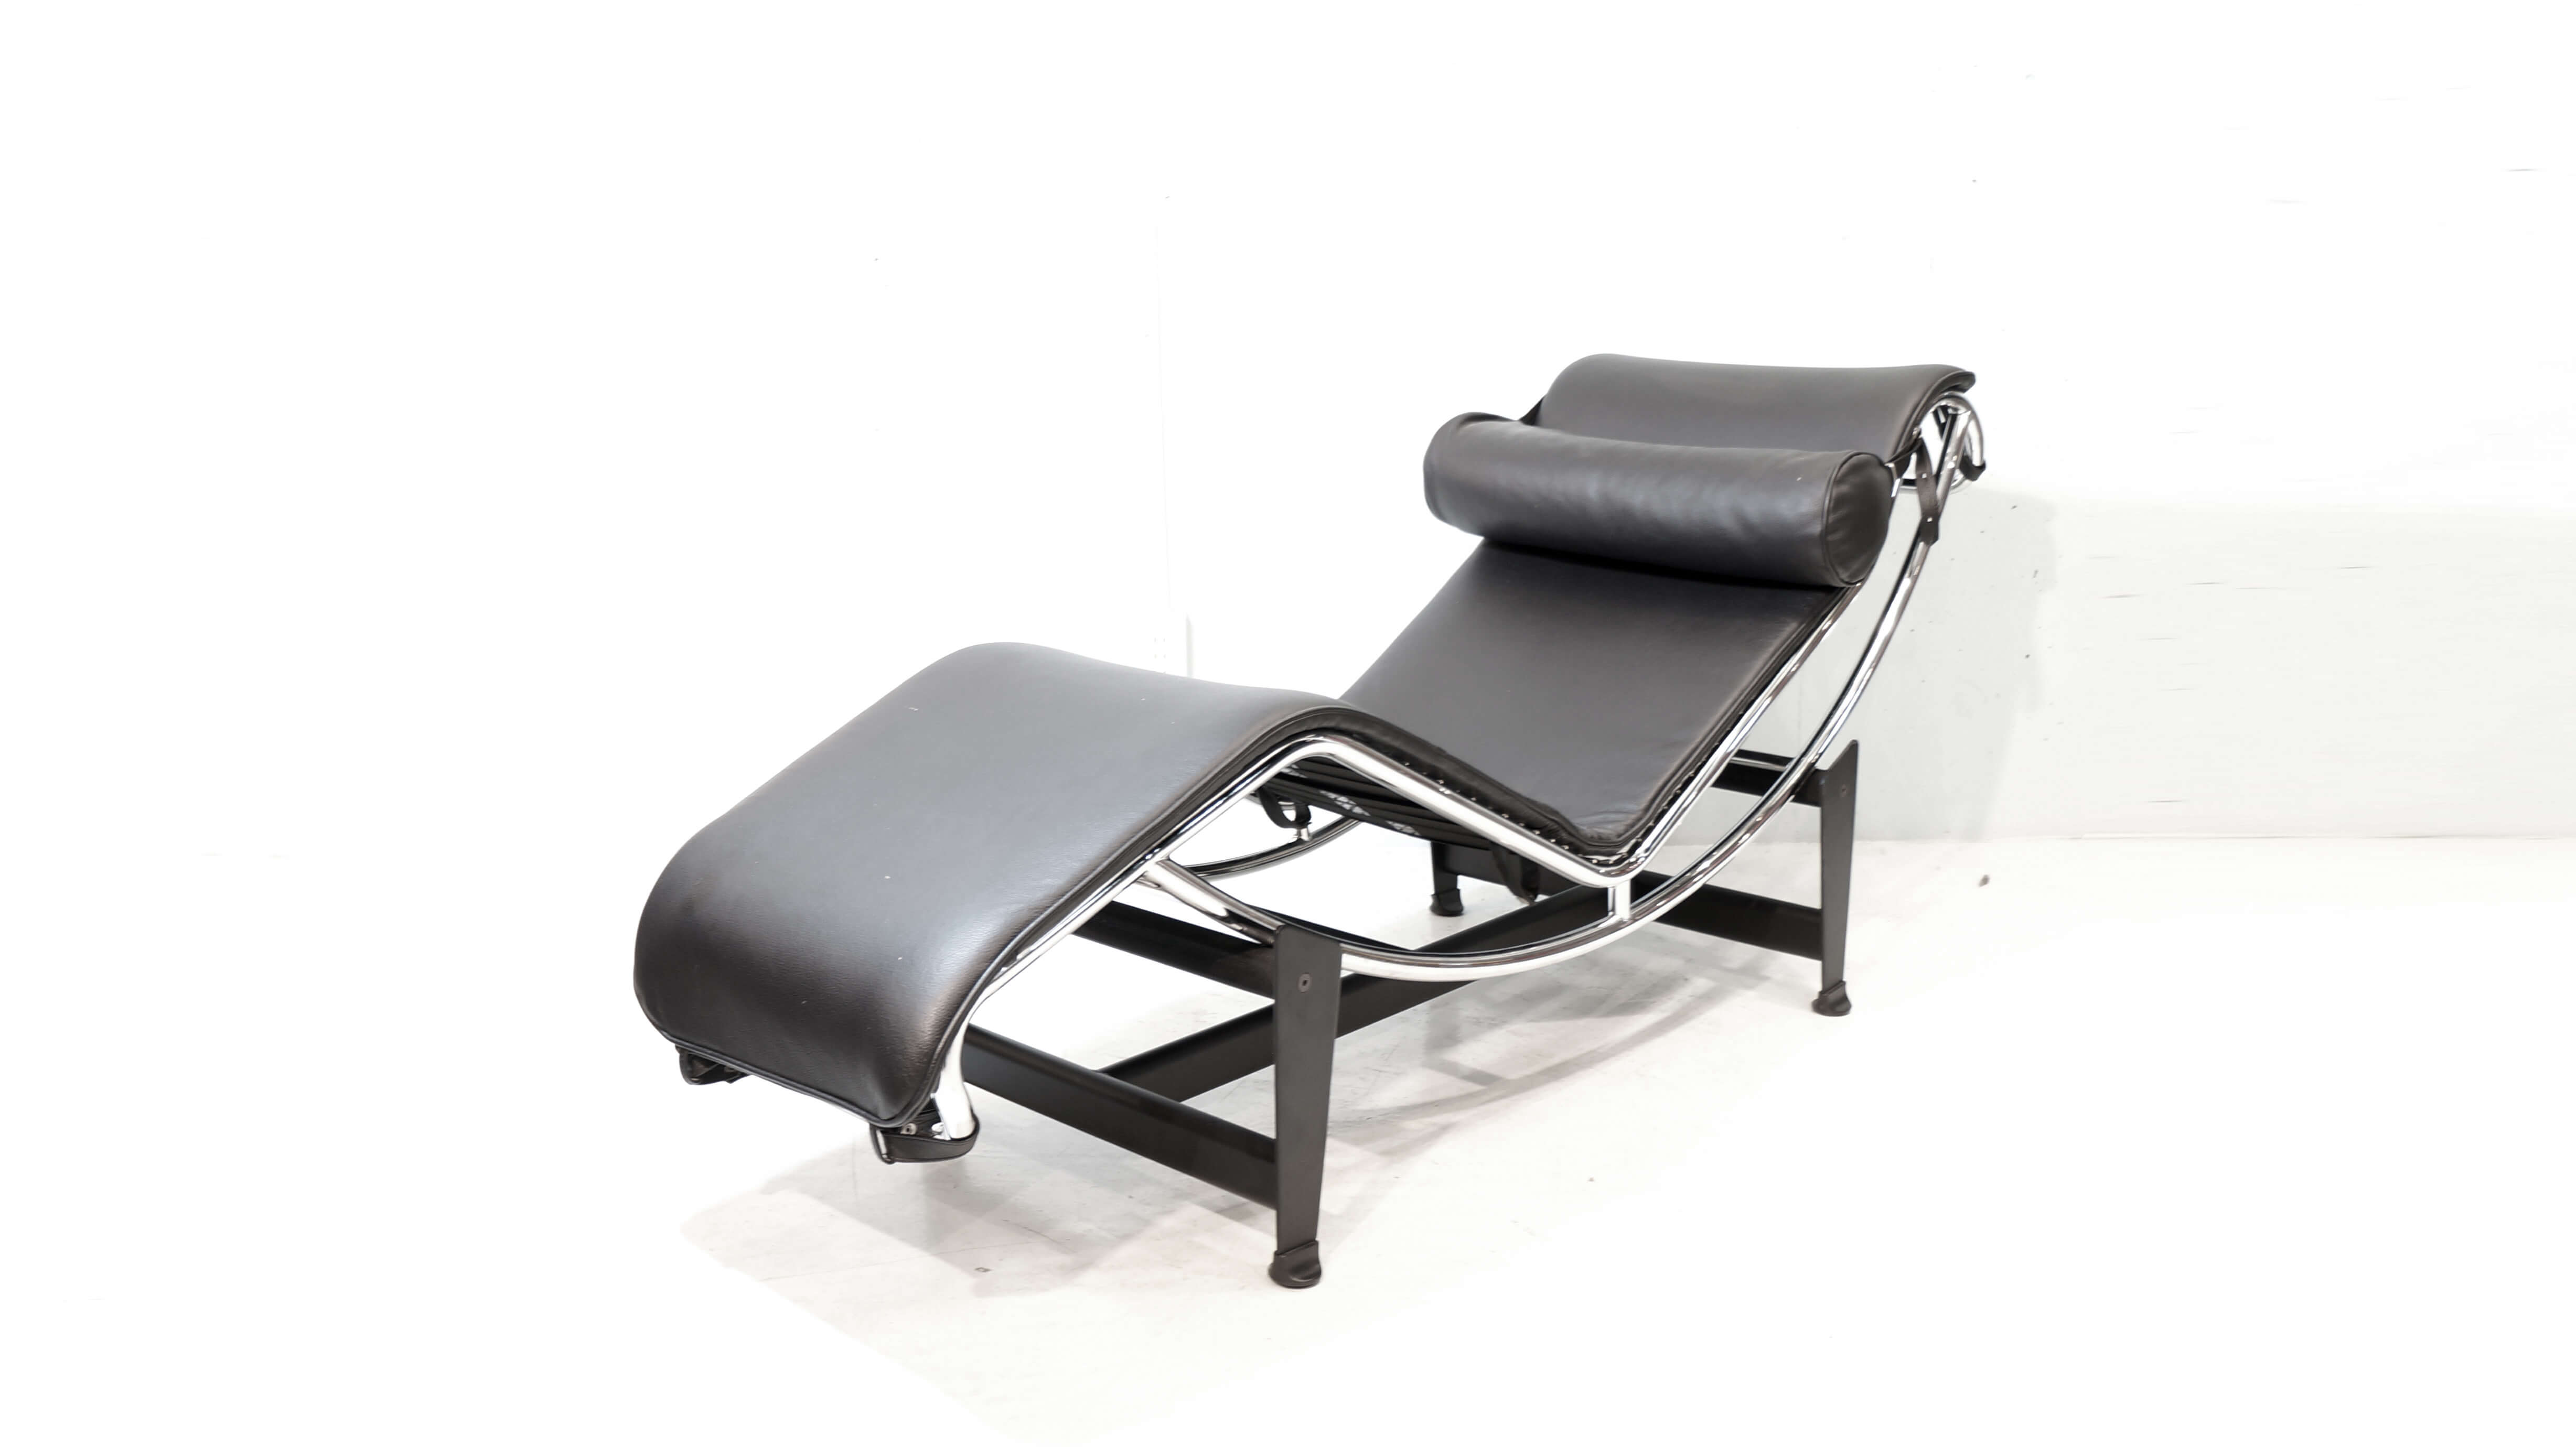 LC４シェーズロングチェア。1929年のサロン・ドートンヌで発表され「休養の為の機械」とル・コルビュジエが呼んだ寝椅子。ル・コルビュジェ、ピエール・ジャンヌレ、シャルロット・ペリアンの3人による共同デザインの作品です。「コルビジェの建築のコンセプトを元に導かれた形」「休息椅子としての機能性」「装飾主義から抜け出し「設備」としての家具」というような要素を満たすものとして生み出された普遍の美しさを持つデザイナーズチェアです。綿密にデザインされた背のカーブと、弓形のパイプをずらすことによって寝る角度を自由に変えられることで、素晴らしい座り心地をもたらします。独創的かつ革新的でありながら優美なラインを持つこの作品は世界一有名な寝椅子といわれており、LC4 シェーズロングが住宅やマンションに置かれる事により、空間全体のデザイン性のレベルがあげモダンなインテリアの原点として20世紀を代表するマスターピースのひとつです。是非この機会にいかがでしょうか。≪ル・コルビジェ / Le Corbusier (1887～1965)≫1887年スイスで誕生。 本名シャルル＝エドゥアール・ジャンヌレ。20世紀最も偉大な建築家の一人。19世紀から叫ばれていた近代合理主義を、モダニズムデザインという新しい美学へと結晶させていった指導者。≪ピエール・ジャンヌレ / Pierre Jeanneret (1896-1967)≫スイスの建築家でル・コルビュジエの従兄弟にあたり、彼の最も重要なパートナーの一人である。ル・コルビュジエと事務所を設立し、シャルロット・ペリアンと共にLCシリーズなどの名作家具デザインを手がける。≪シャルロット・ペリアン / Charlotte Perriand (1903-1999)≫フランスの建築家、デザイナー。1927年に「屋根裏のバー」を発表し、後にル・コルビュジエのアトリエへ入所する。シェーズロングを始め、数々の名作をコルビュジエとともに世に送り出しました。坂倉準三の推薦により日本に来日したペリアンは、日本の伝統的な暮らしや美意識に深い感銘を受け、その後の作品に強く 反映されました。～【東京都杉並区阿佐ヶ谷北アンティークショップ 古一/ZACK高円寺店】　古一では出張無料買取も行っております。杉並区周辺はもちろん、世田谷区・目黒区・武蔵野市・新宿区等の東京近郊のお見積もりも！ビンテージ家具・インテリア雑貨・ランプ・USED品・ リサイクルなら古一へ～,ユーズド, リサイクル,ふるいち,古市,フルイチ,used,furuichi,デザイナーズ,デザイナーズ家具,